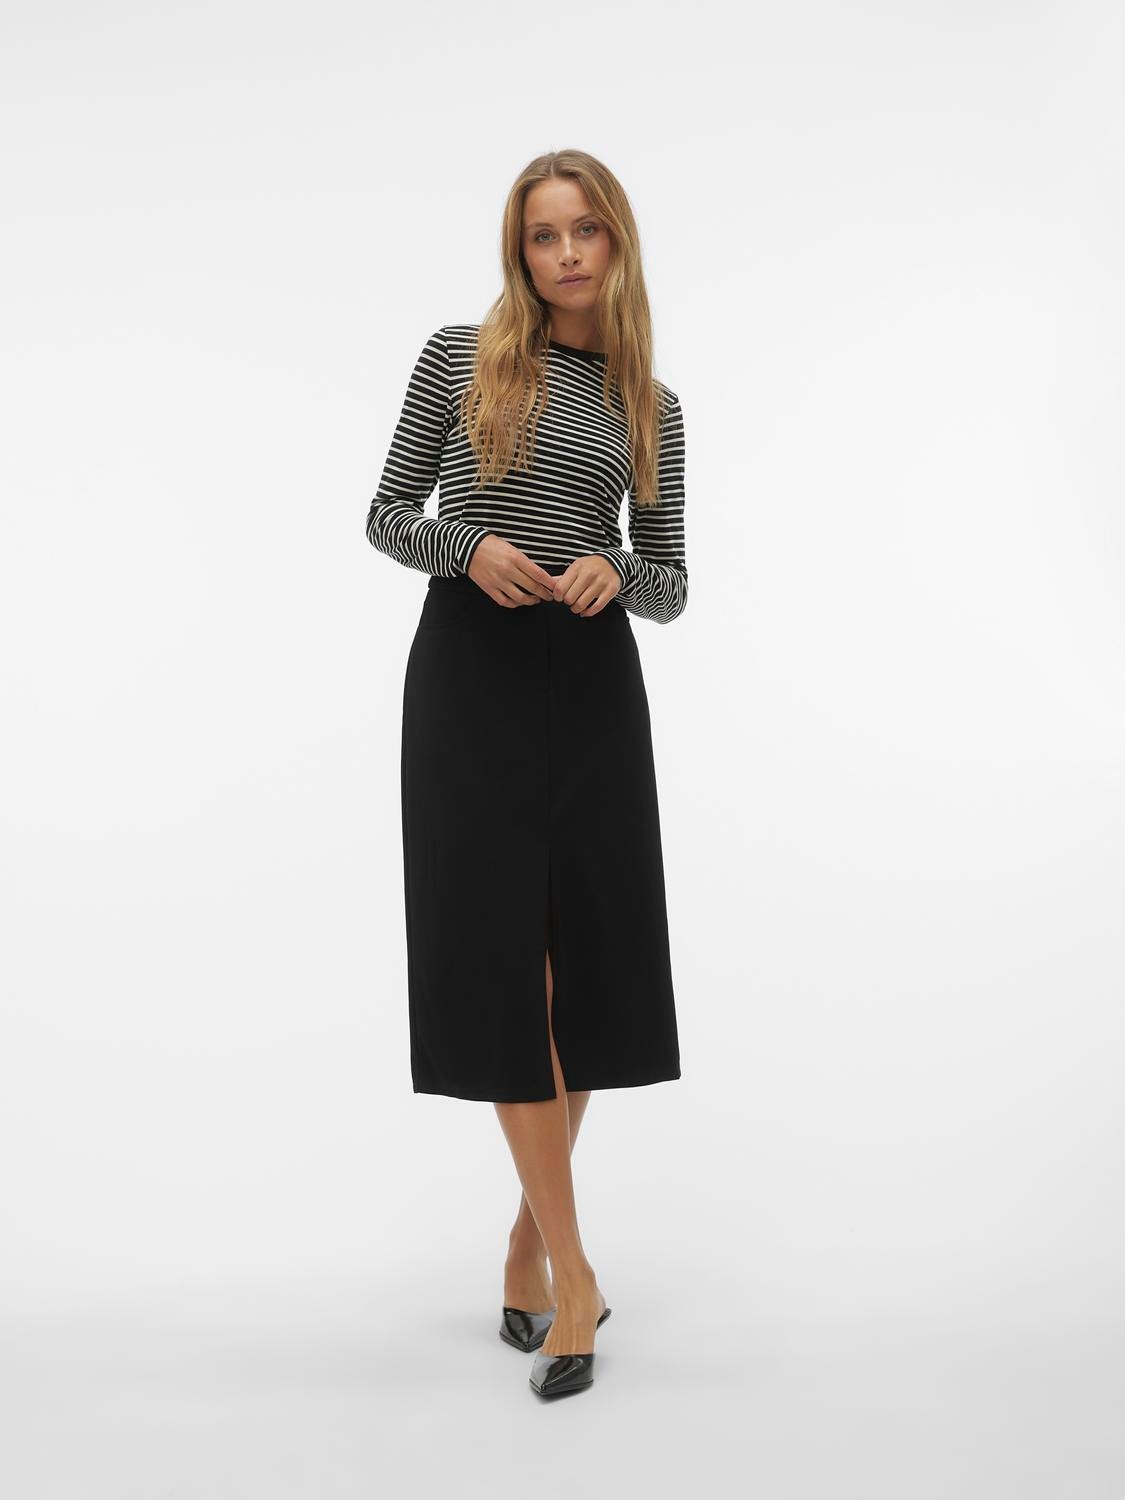 Vero Moda VMCUBA Long skirt -Black - 10302484